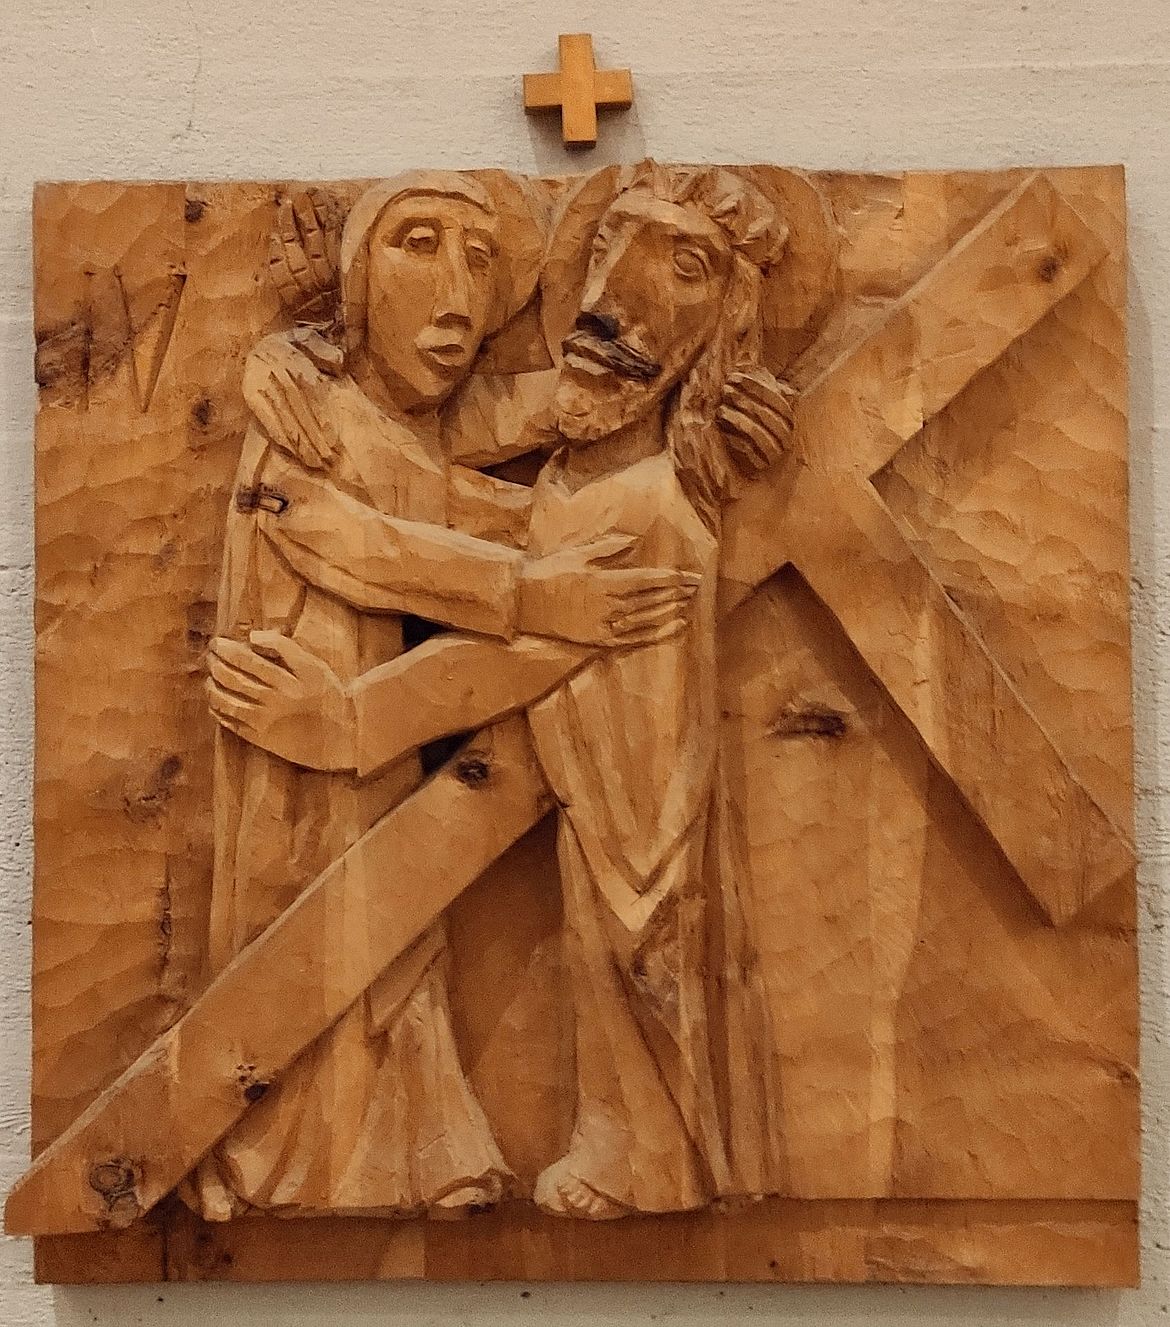 4. Station: Jesus begegnet seiner Mutter